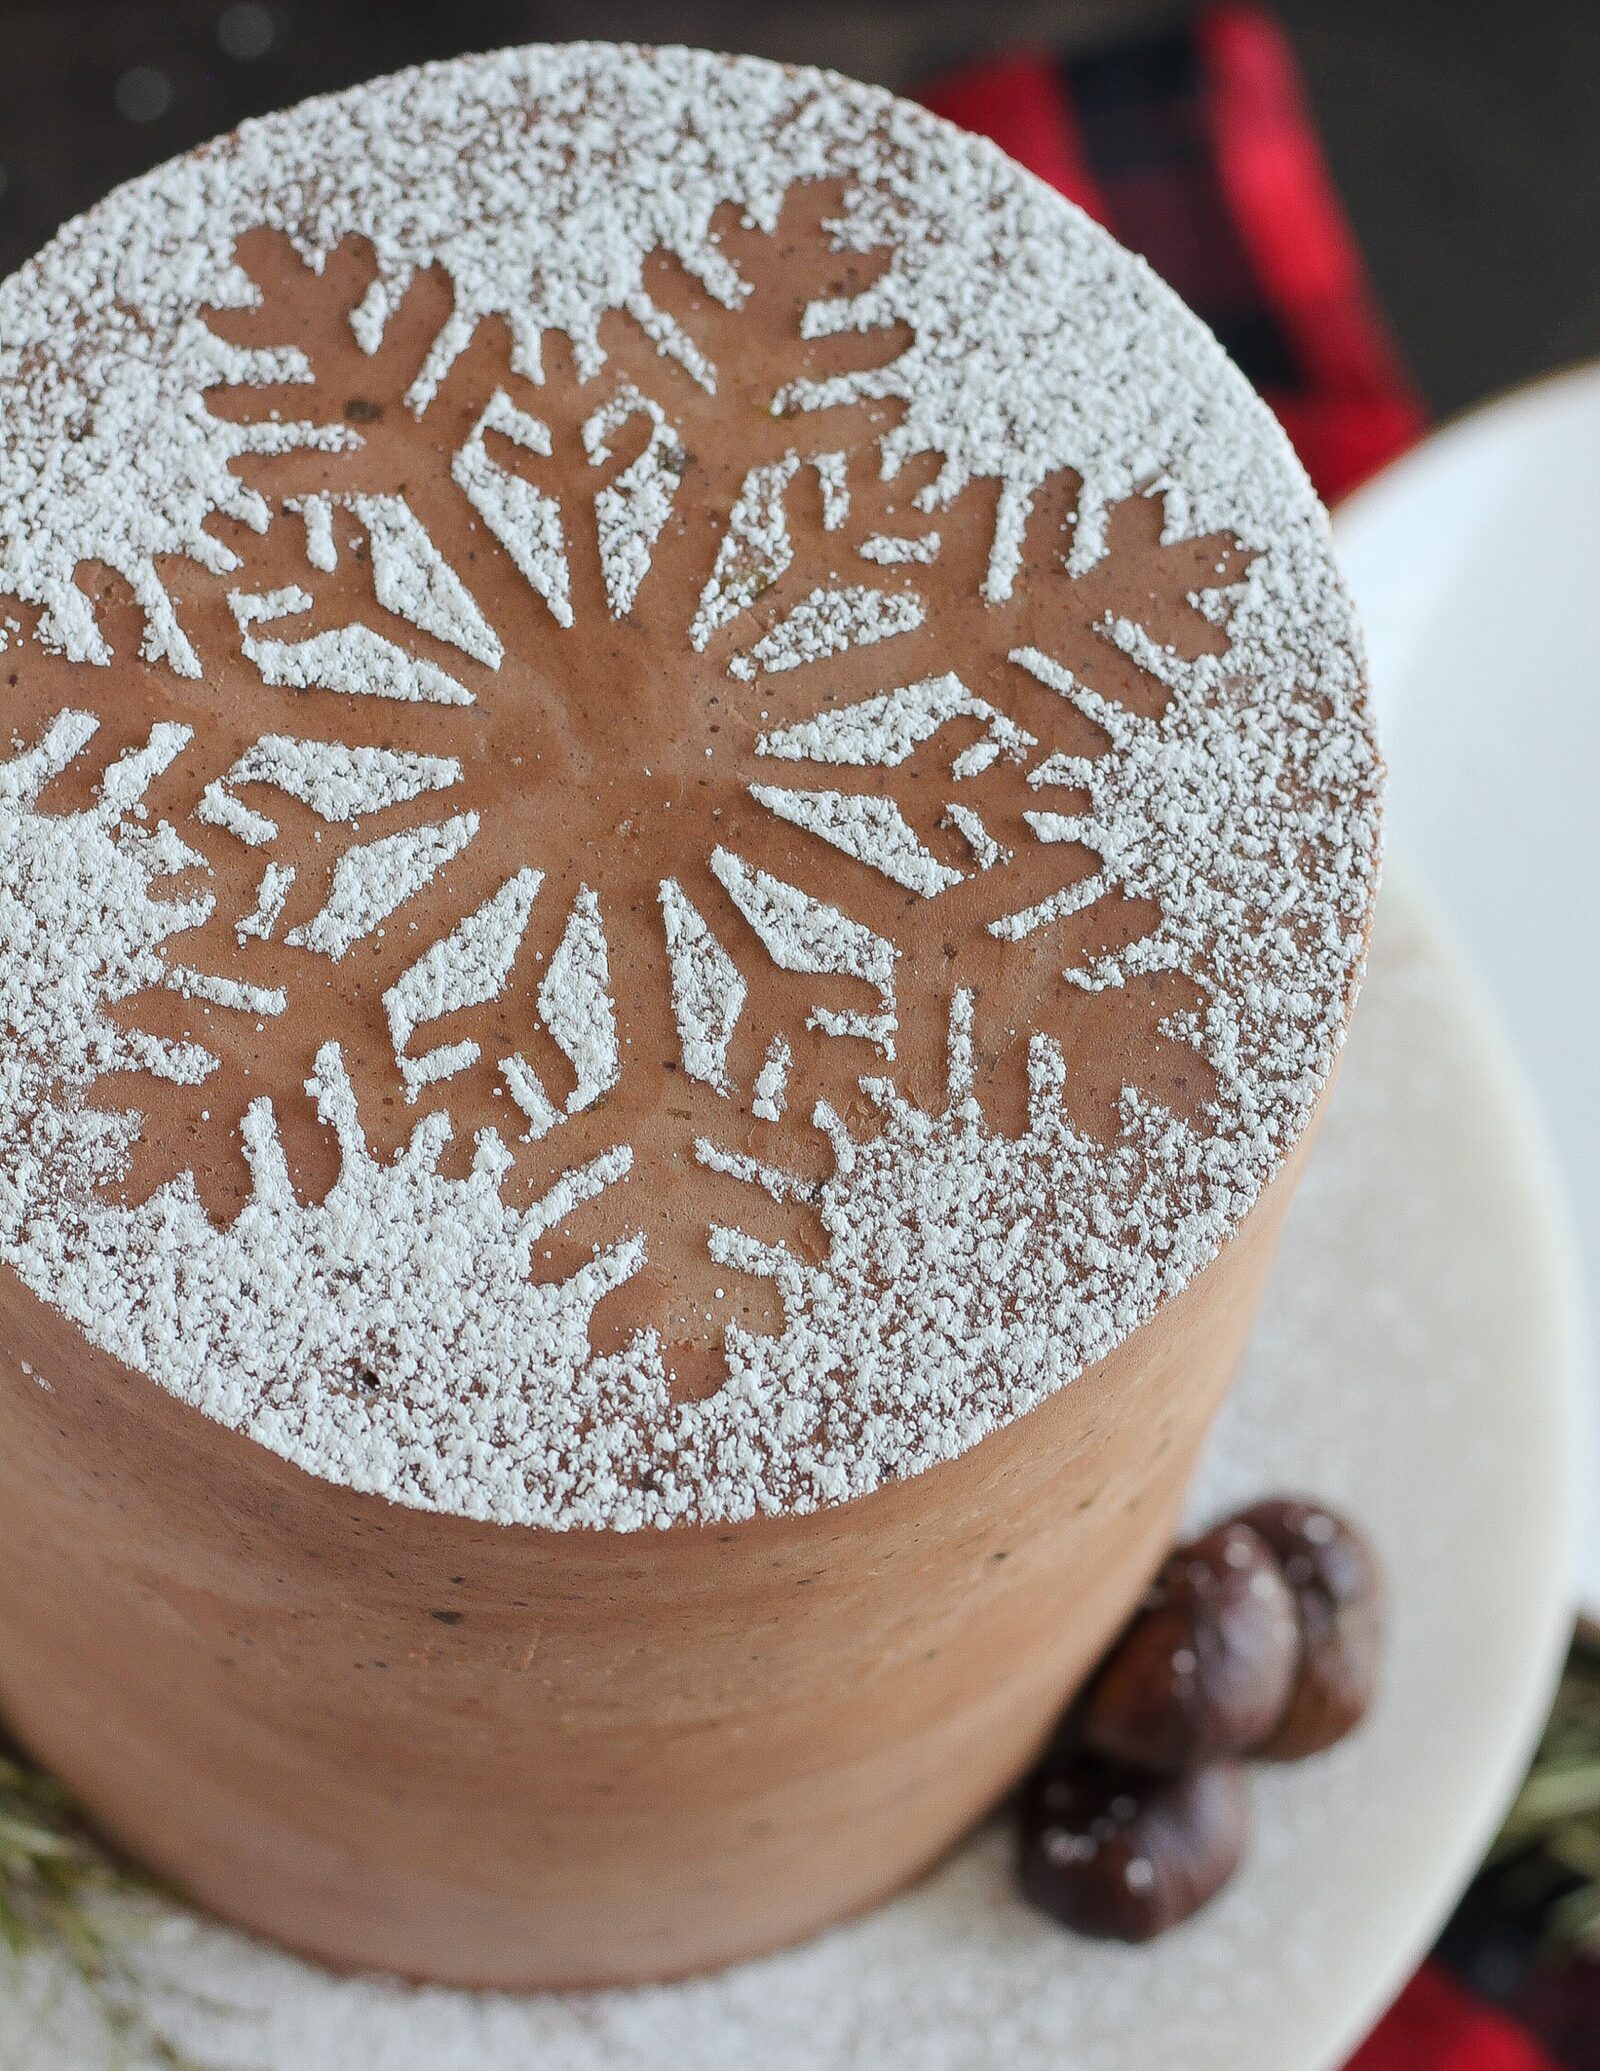 How to Make a Chocolate Snowflake Cake